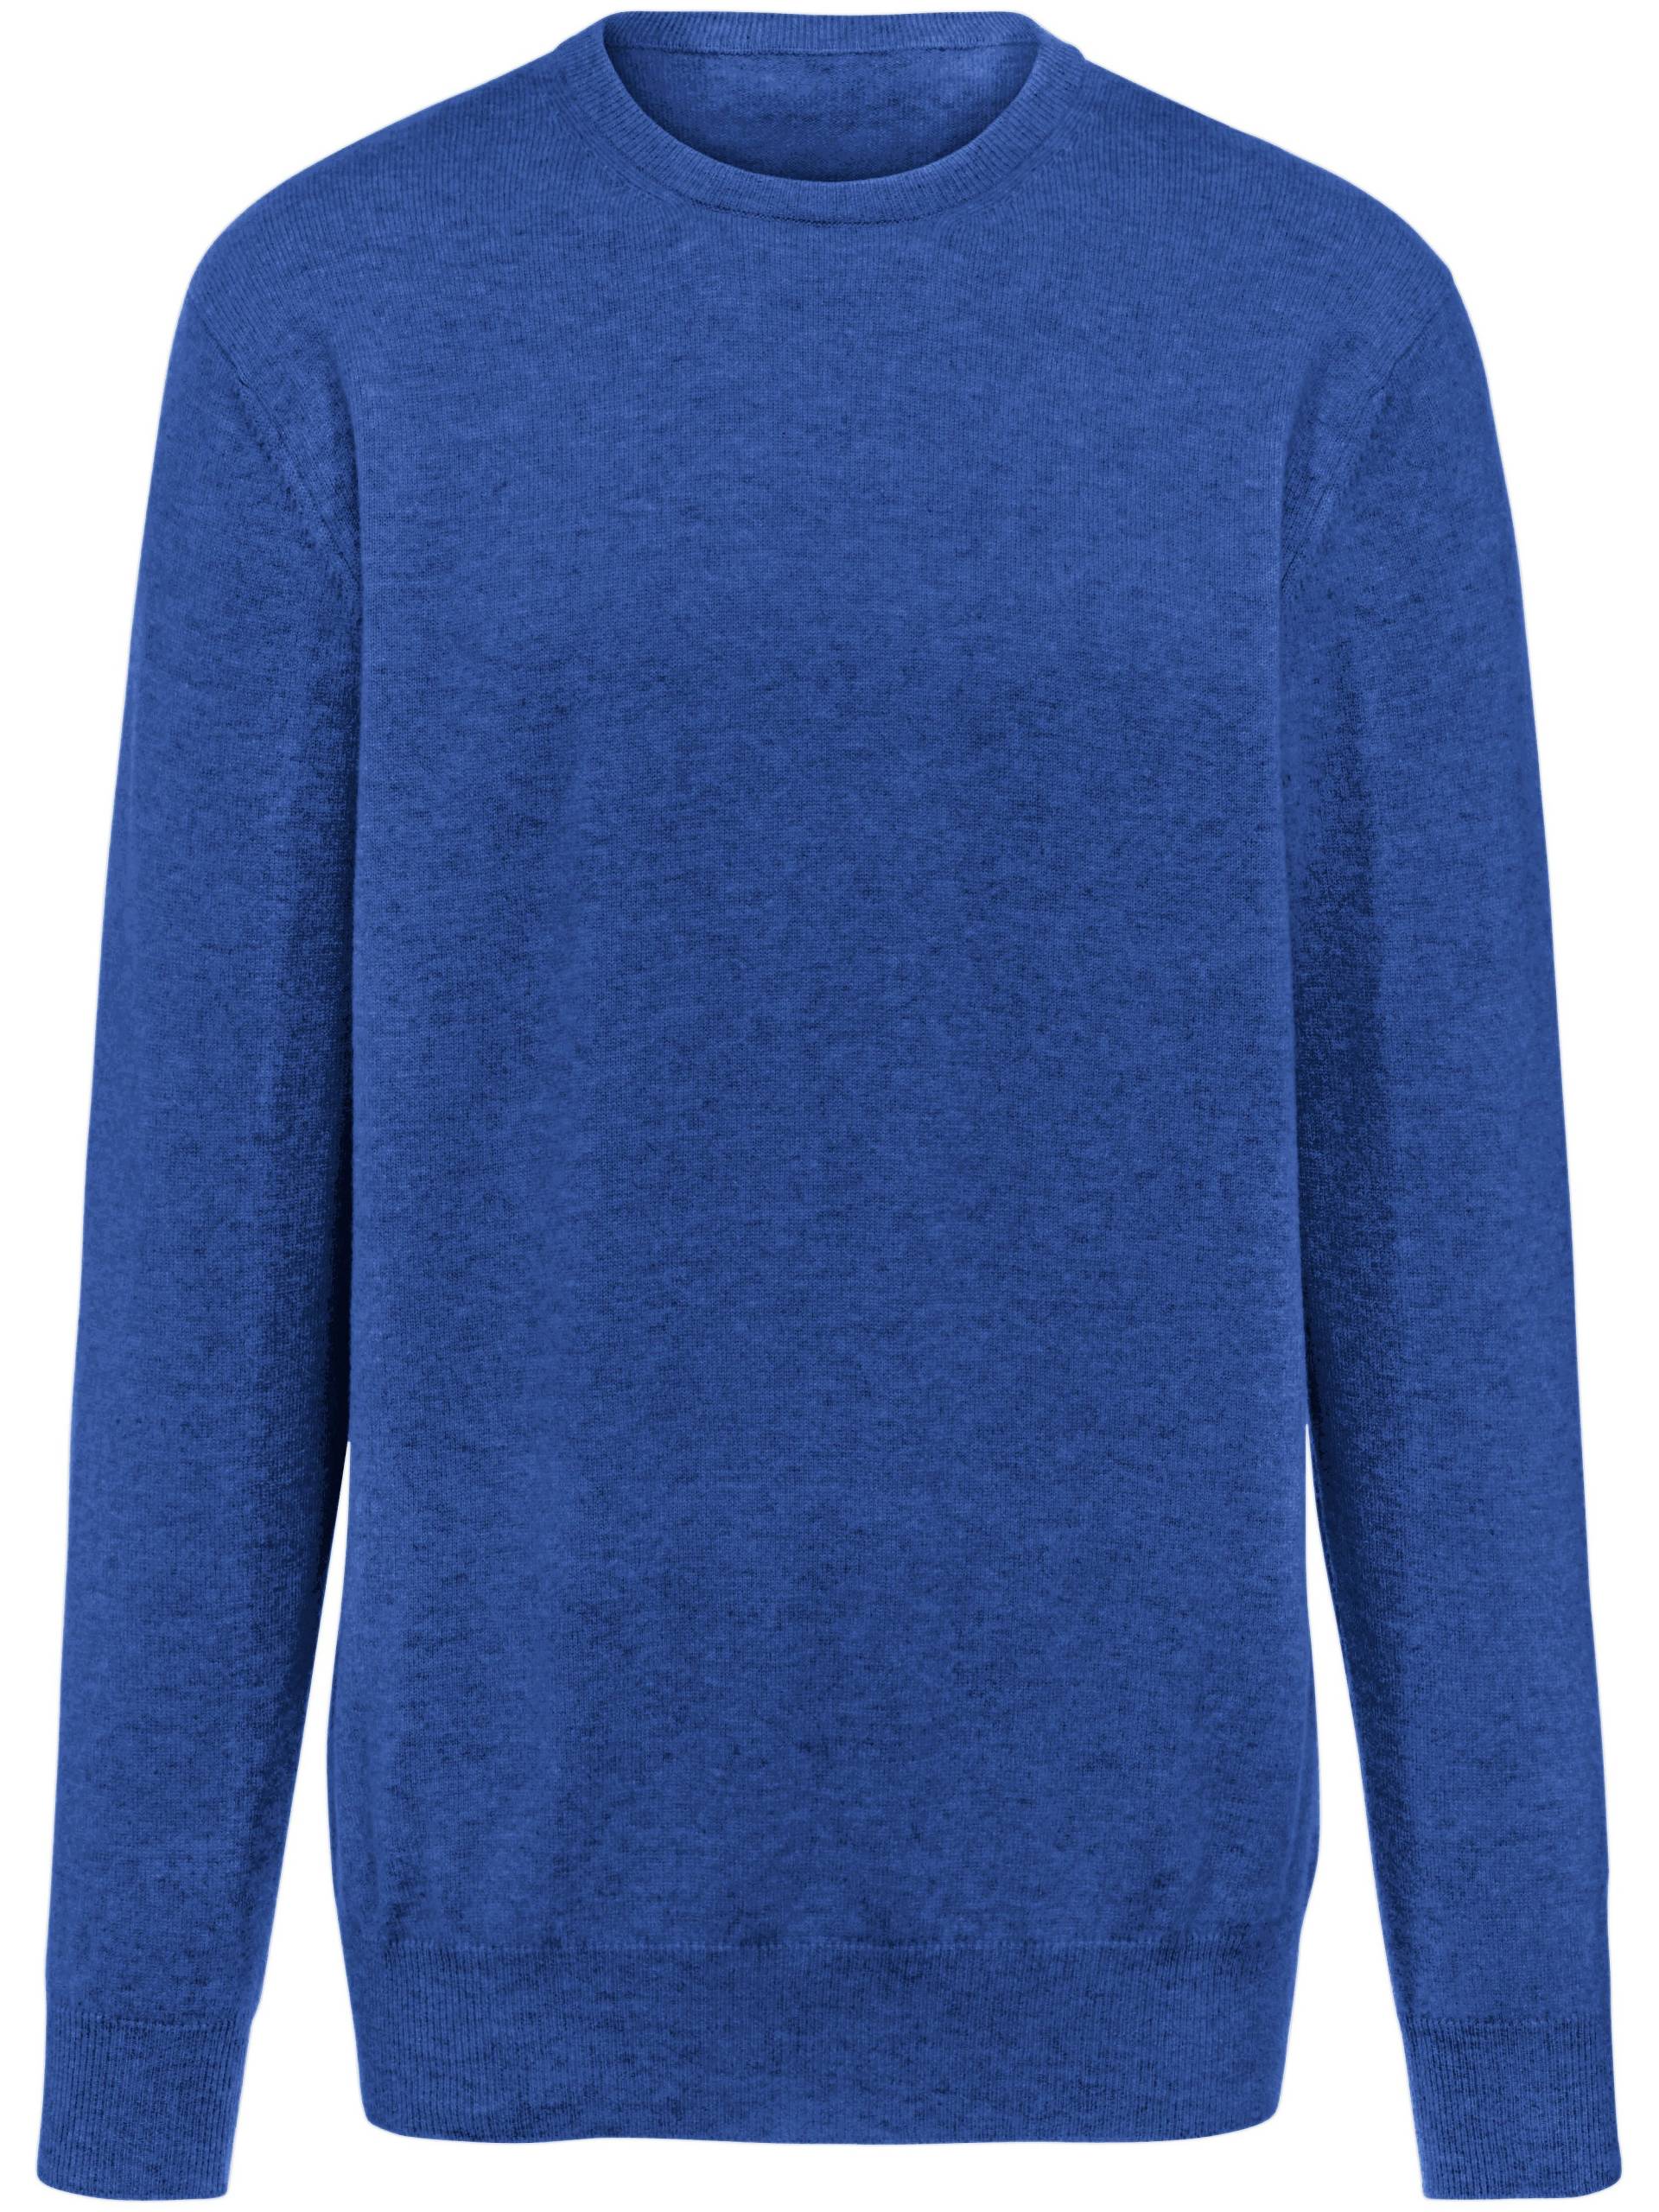 Pullover aus 100% Premium-Kaschmir Modell Ralph Peter Hahn Cashmere blau Größe: 52 von Peter Hahn Cashmere